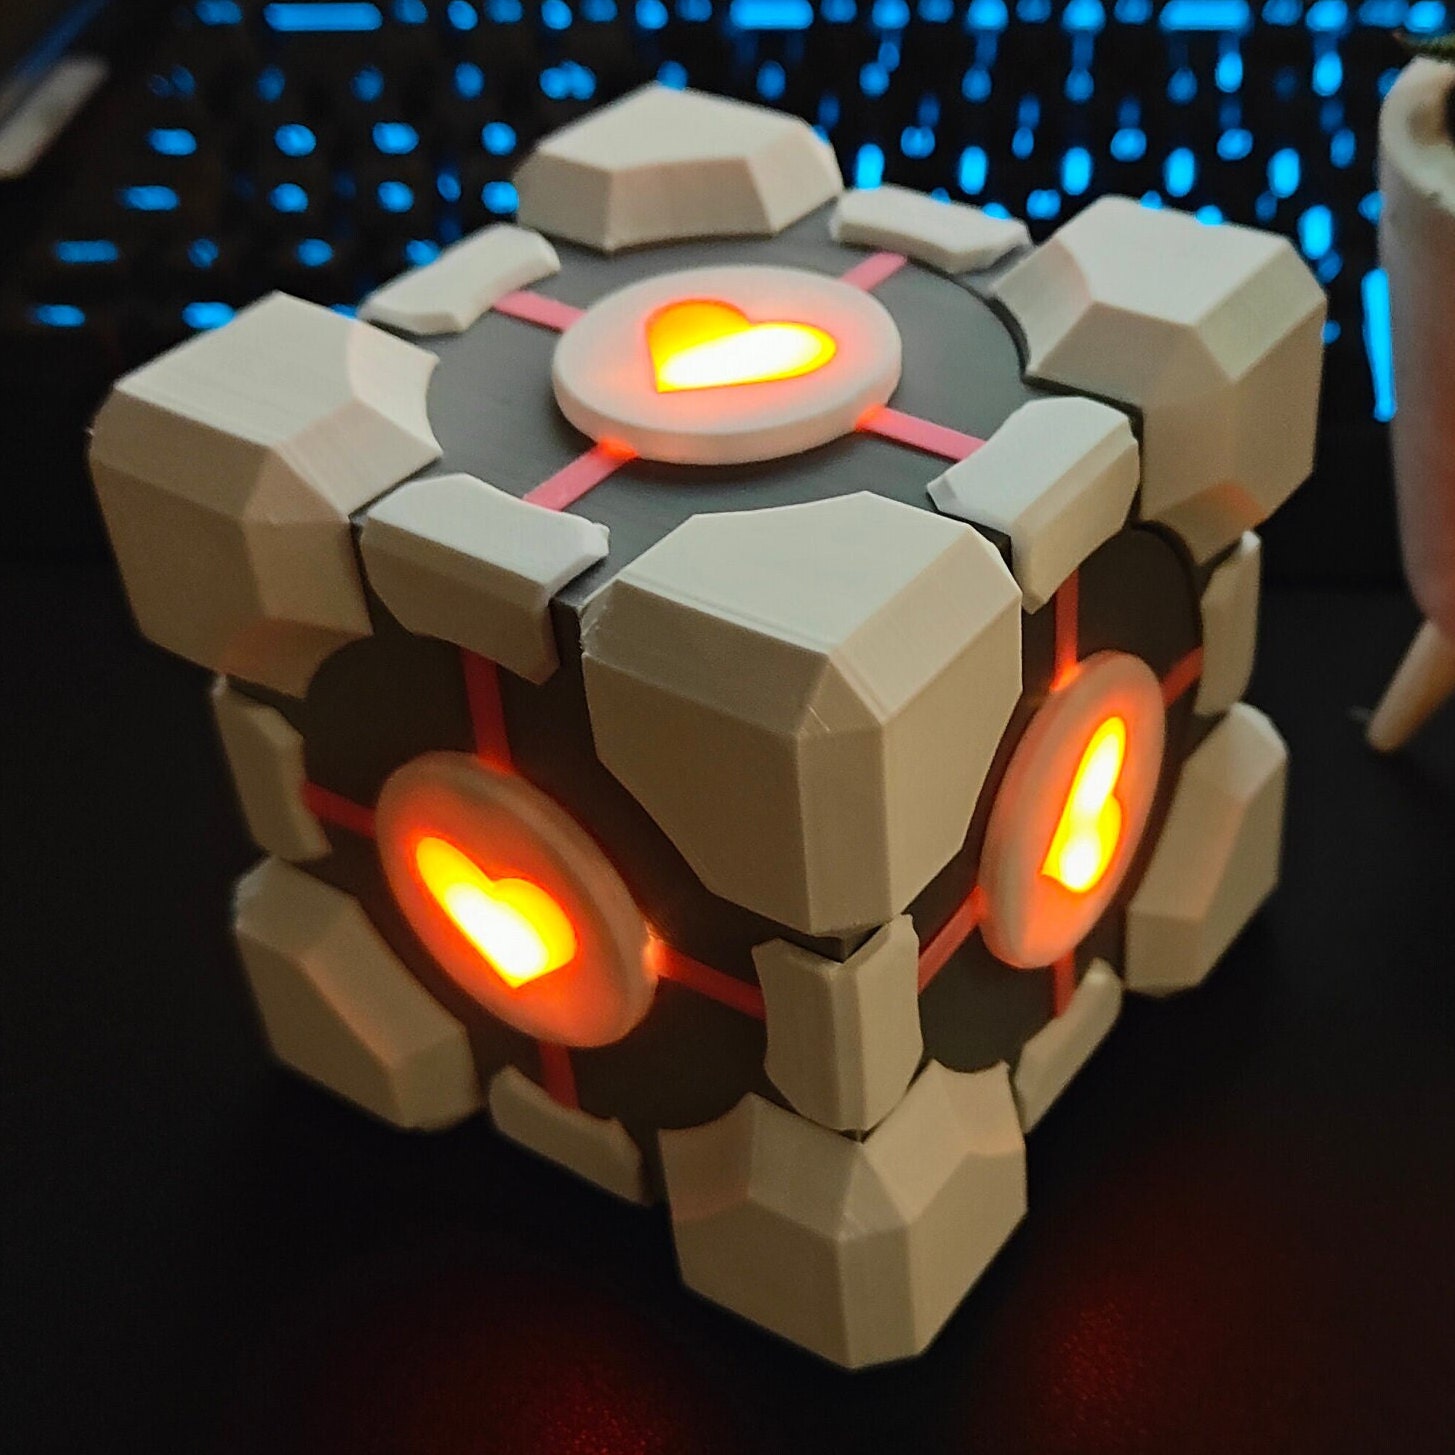 I modsætning til Dårlig faktor præmedicinering Portal Companion Cube LED Light-up Gift Box Decor Gaming - Etsy